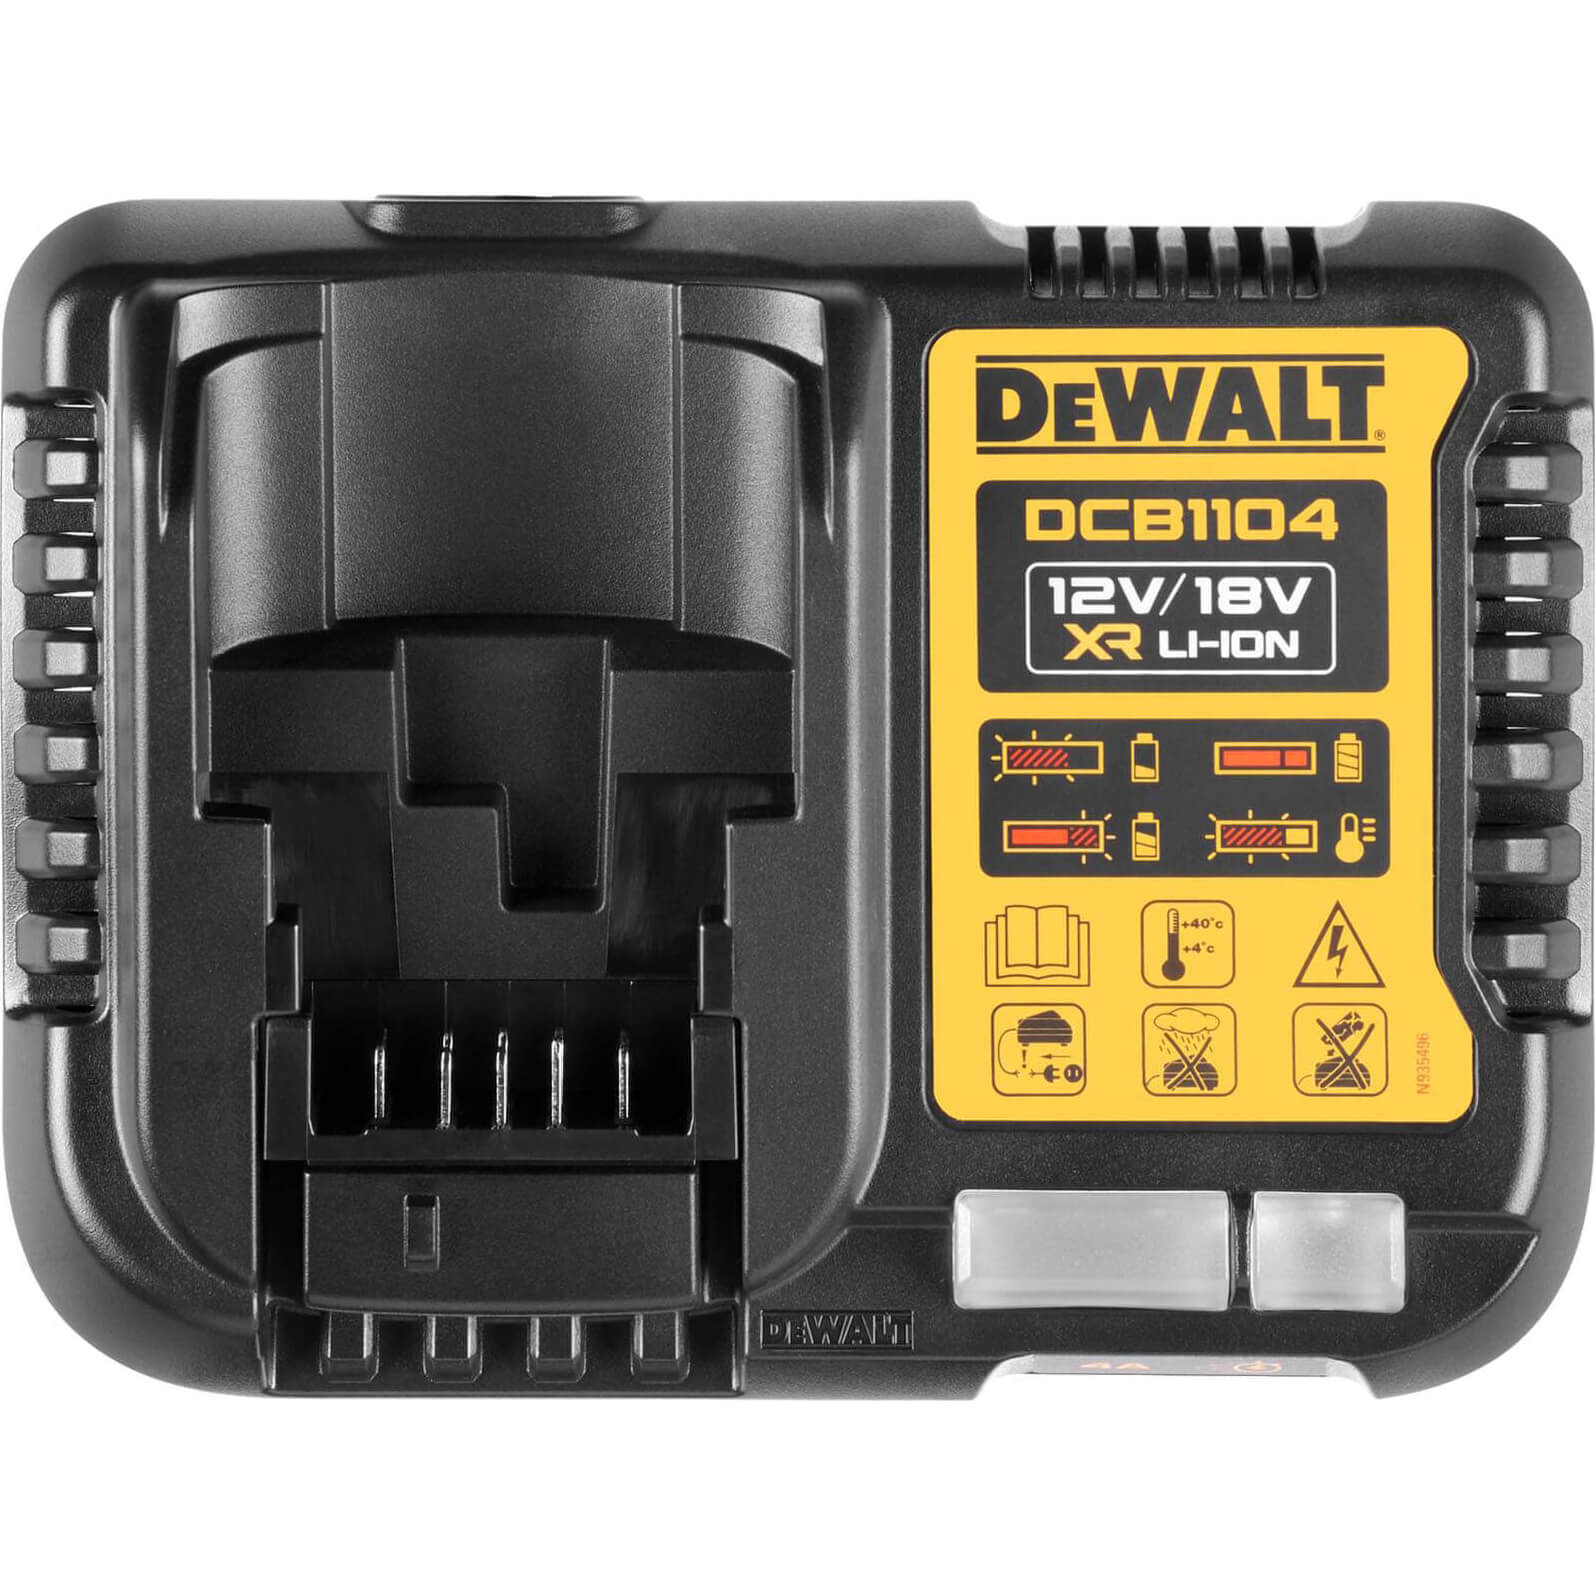 DeWalt DCB1104 18v XR Cordless Li-ion Battery Charger 240v